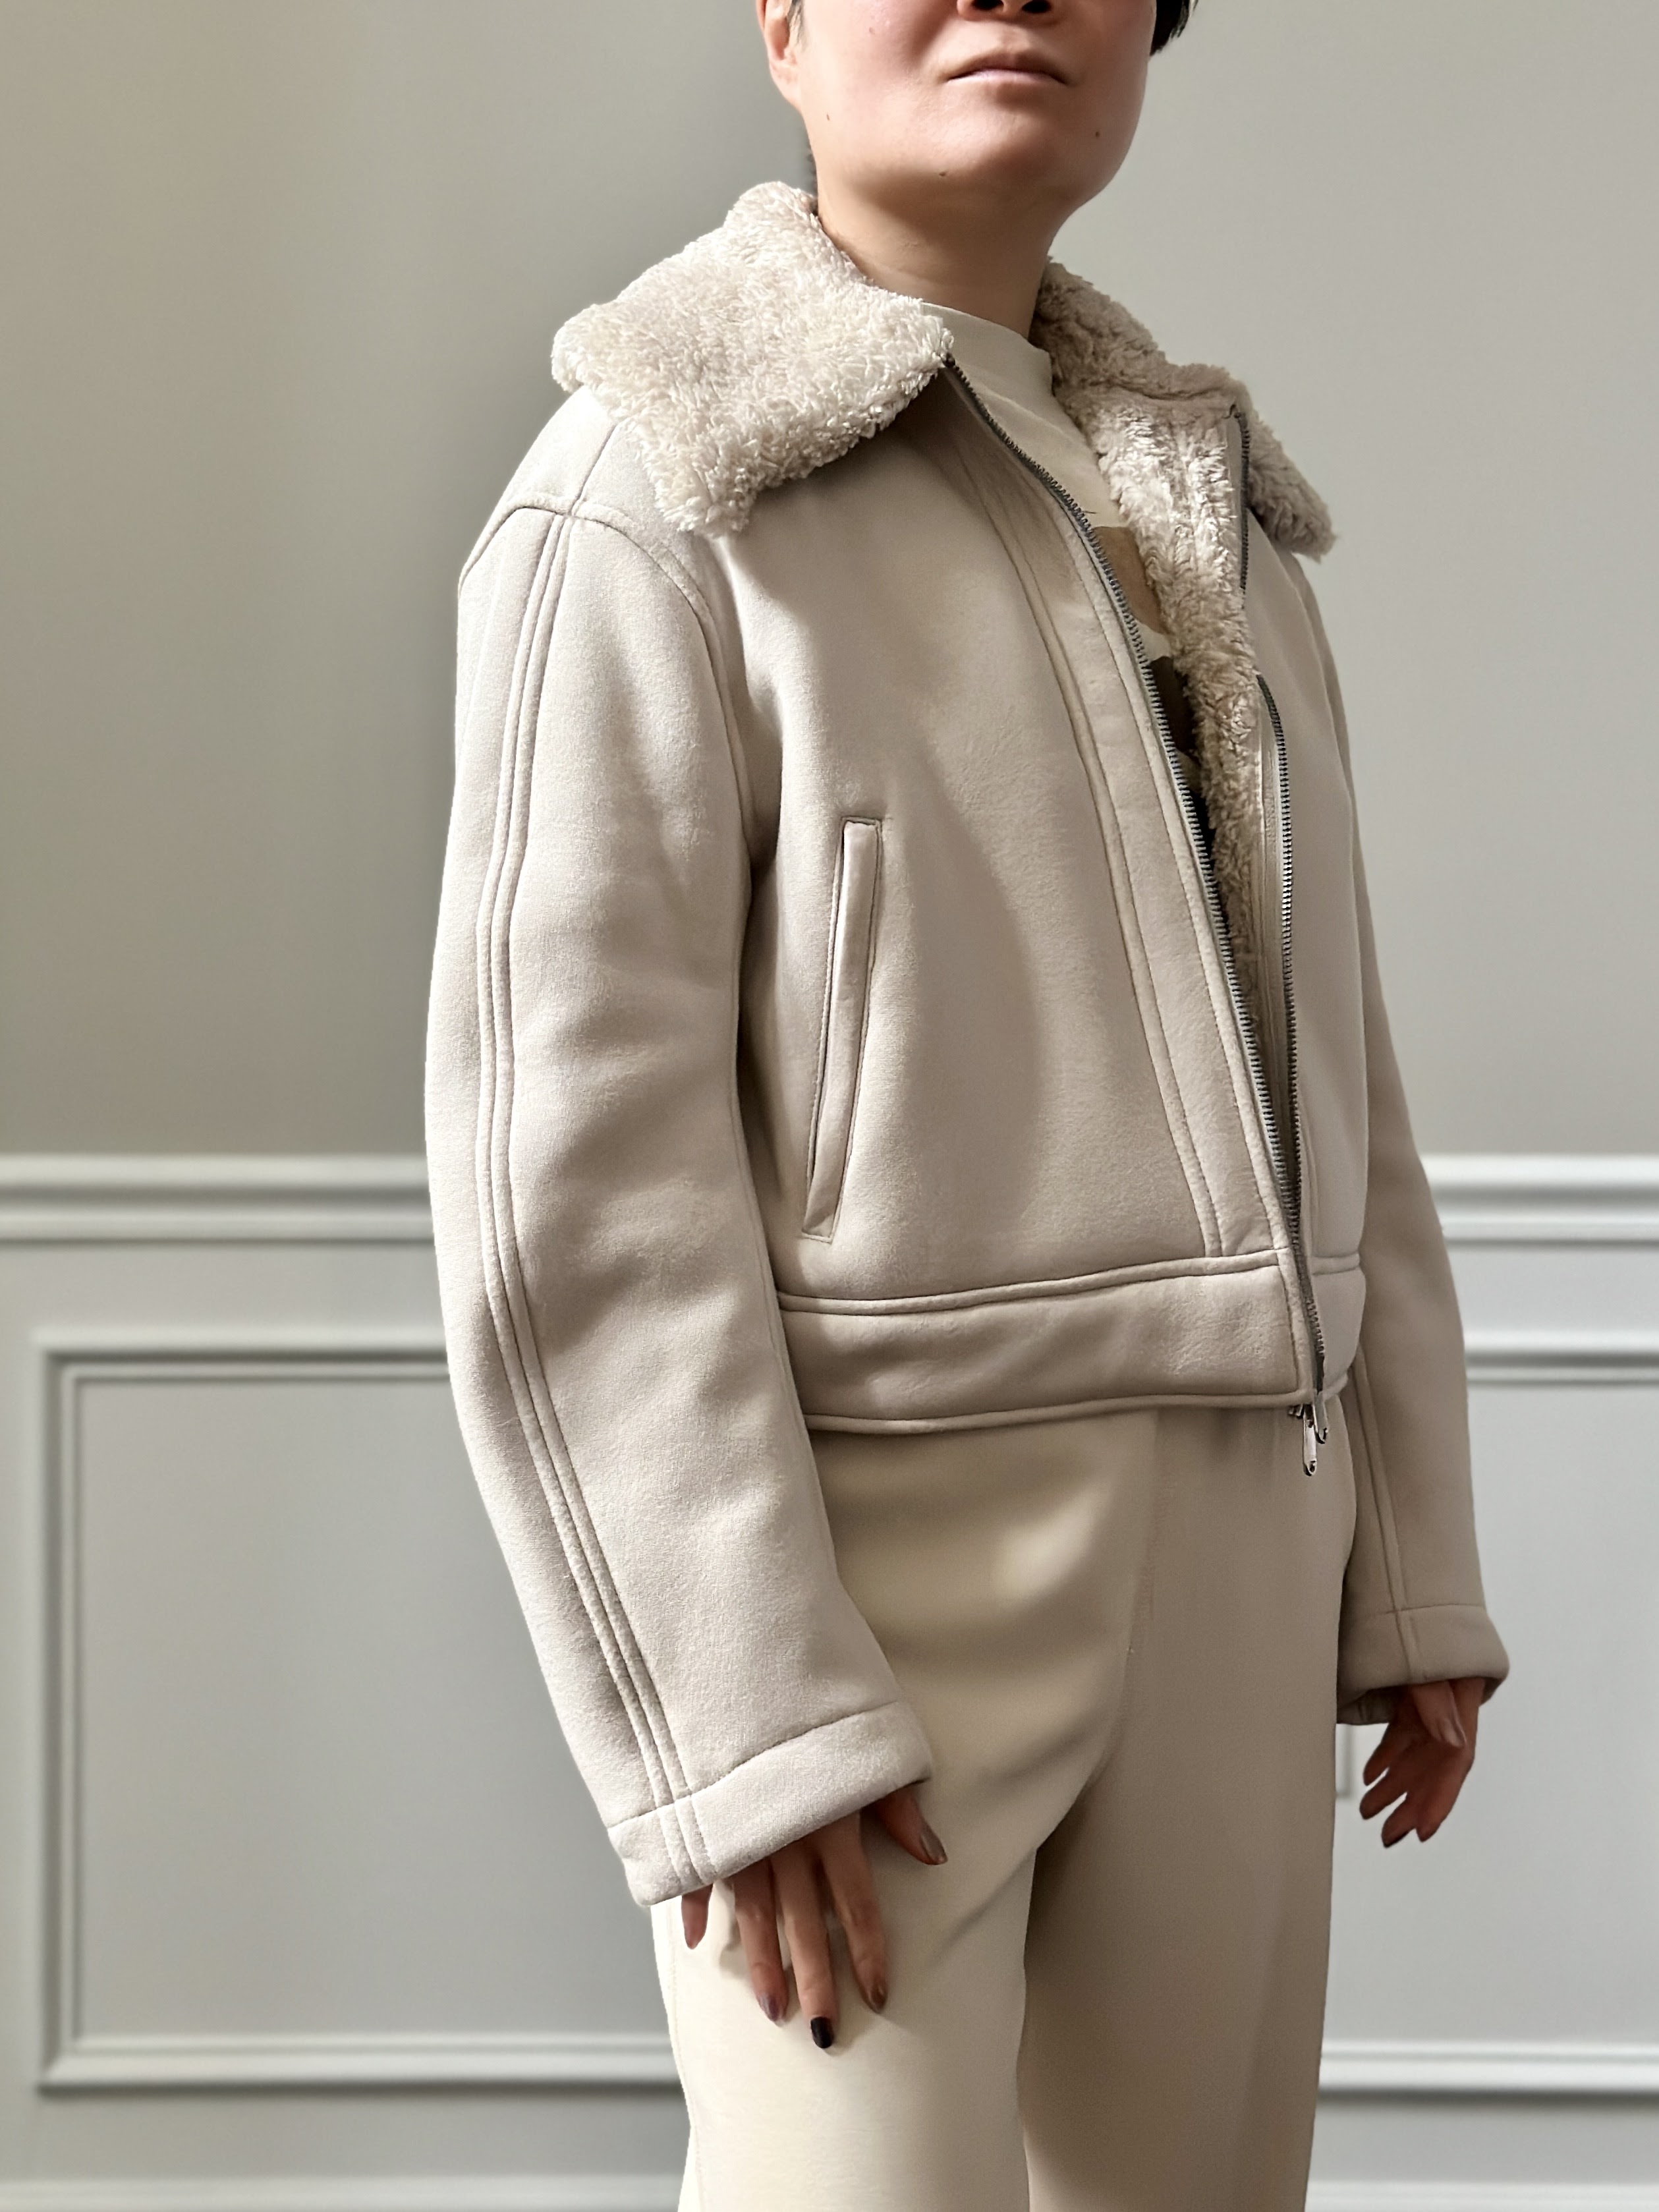 j-hope's closet (rest) on X: J-hope's Louis Vuitton denim jacket